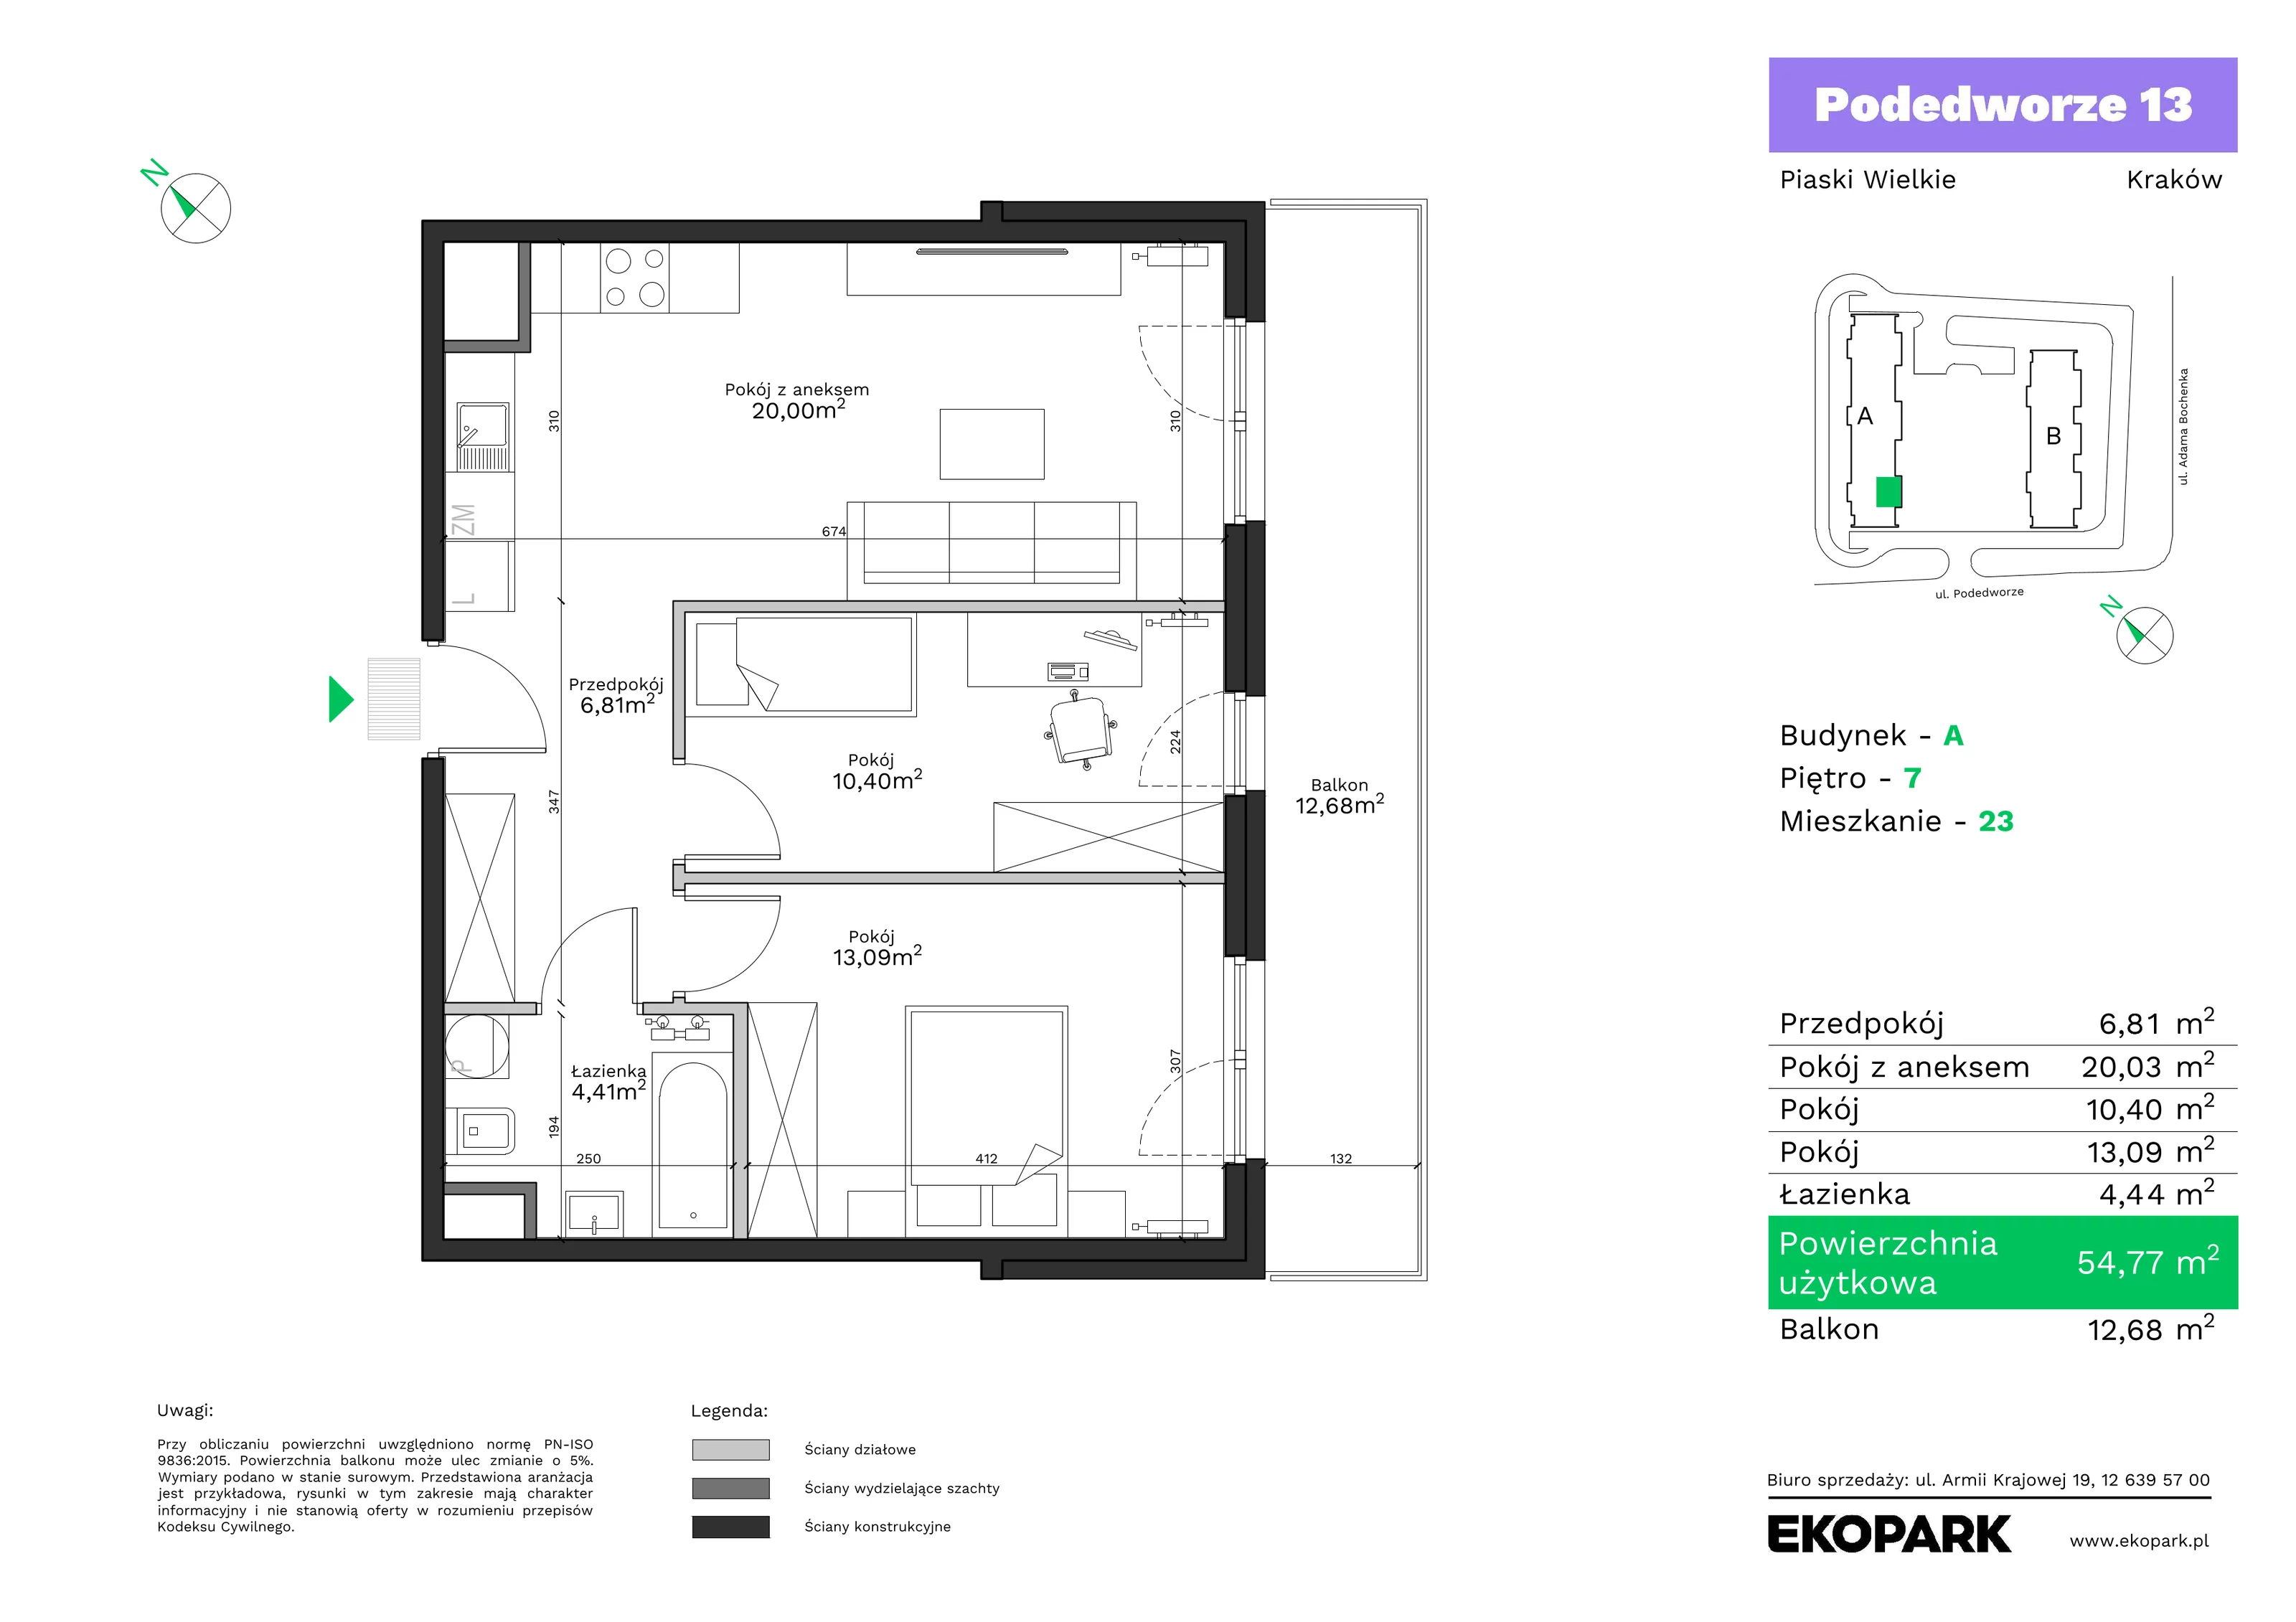 Mieszkanie 54,77 m², piętro 7, oferta nr A23, Podedworze 13, Kraków, Podgórze Duchackie, Piaski Wielkie, ul. Podedworze 13